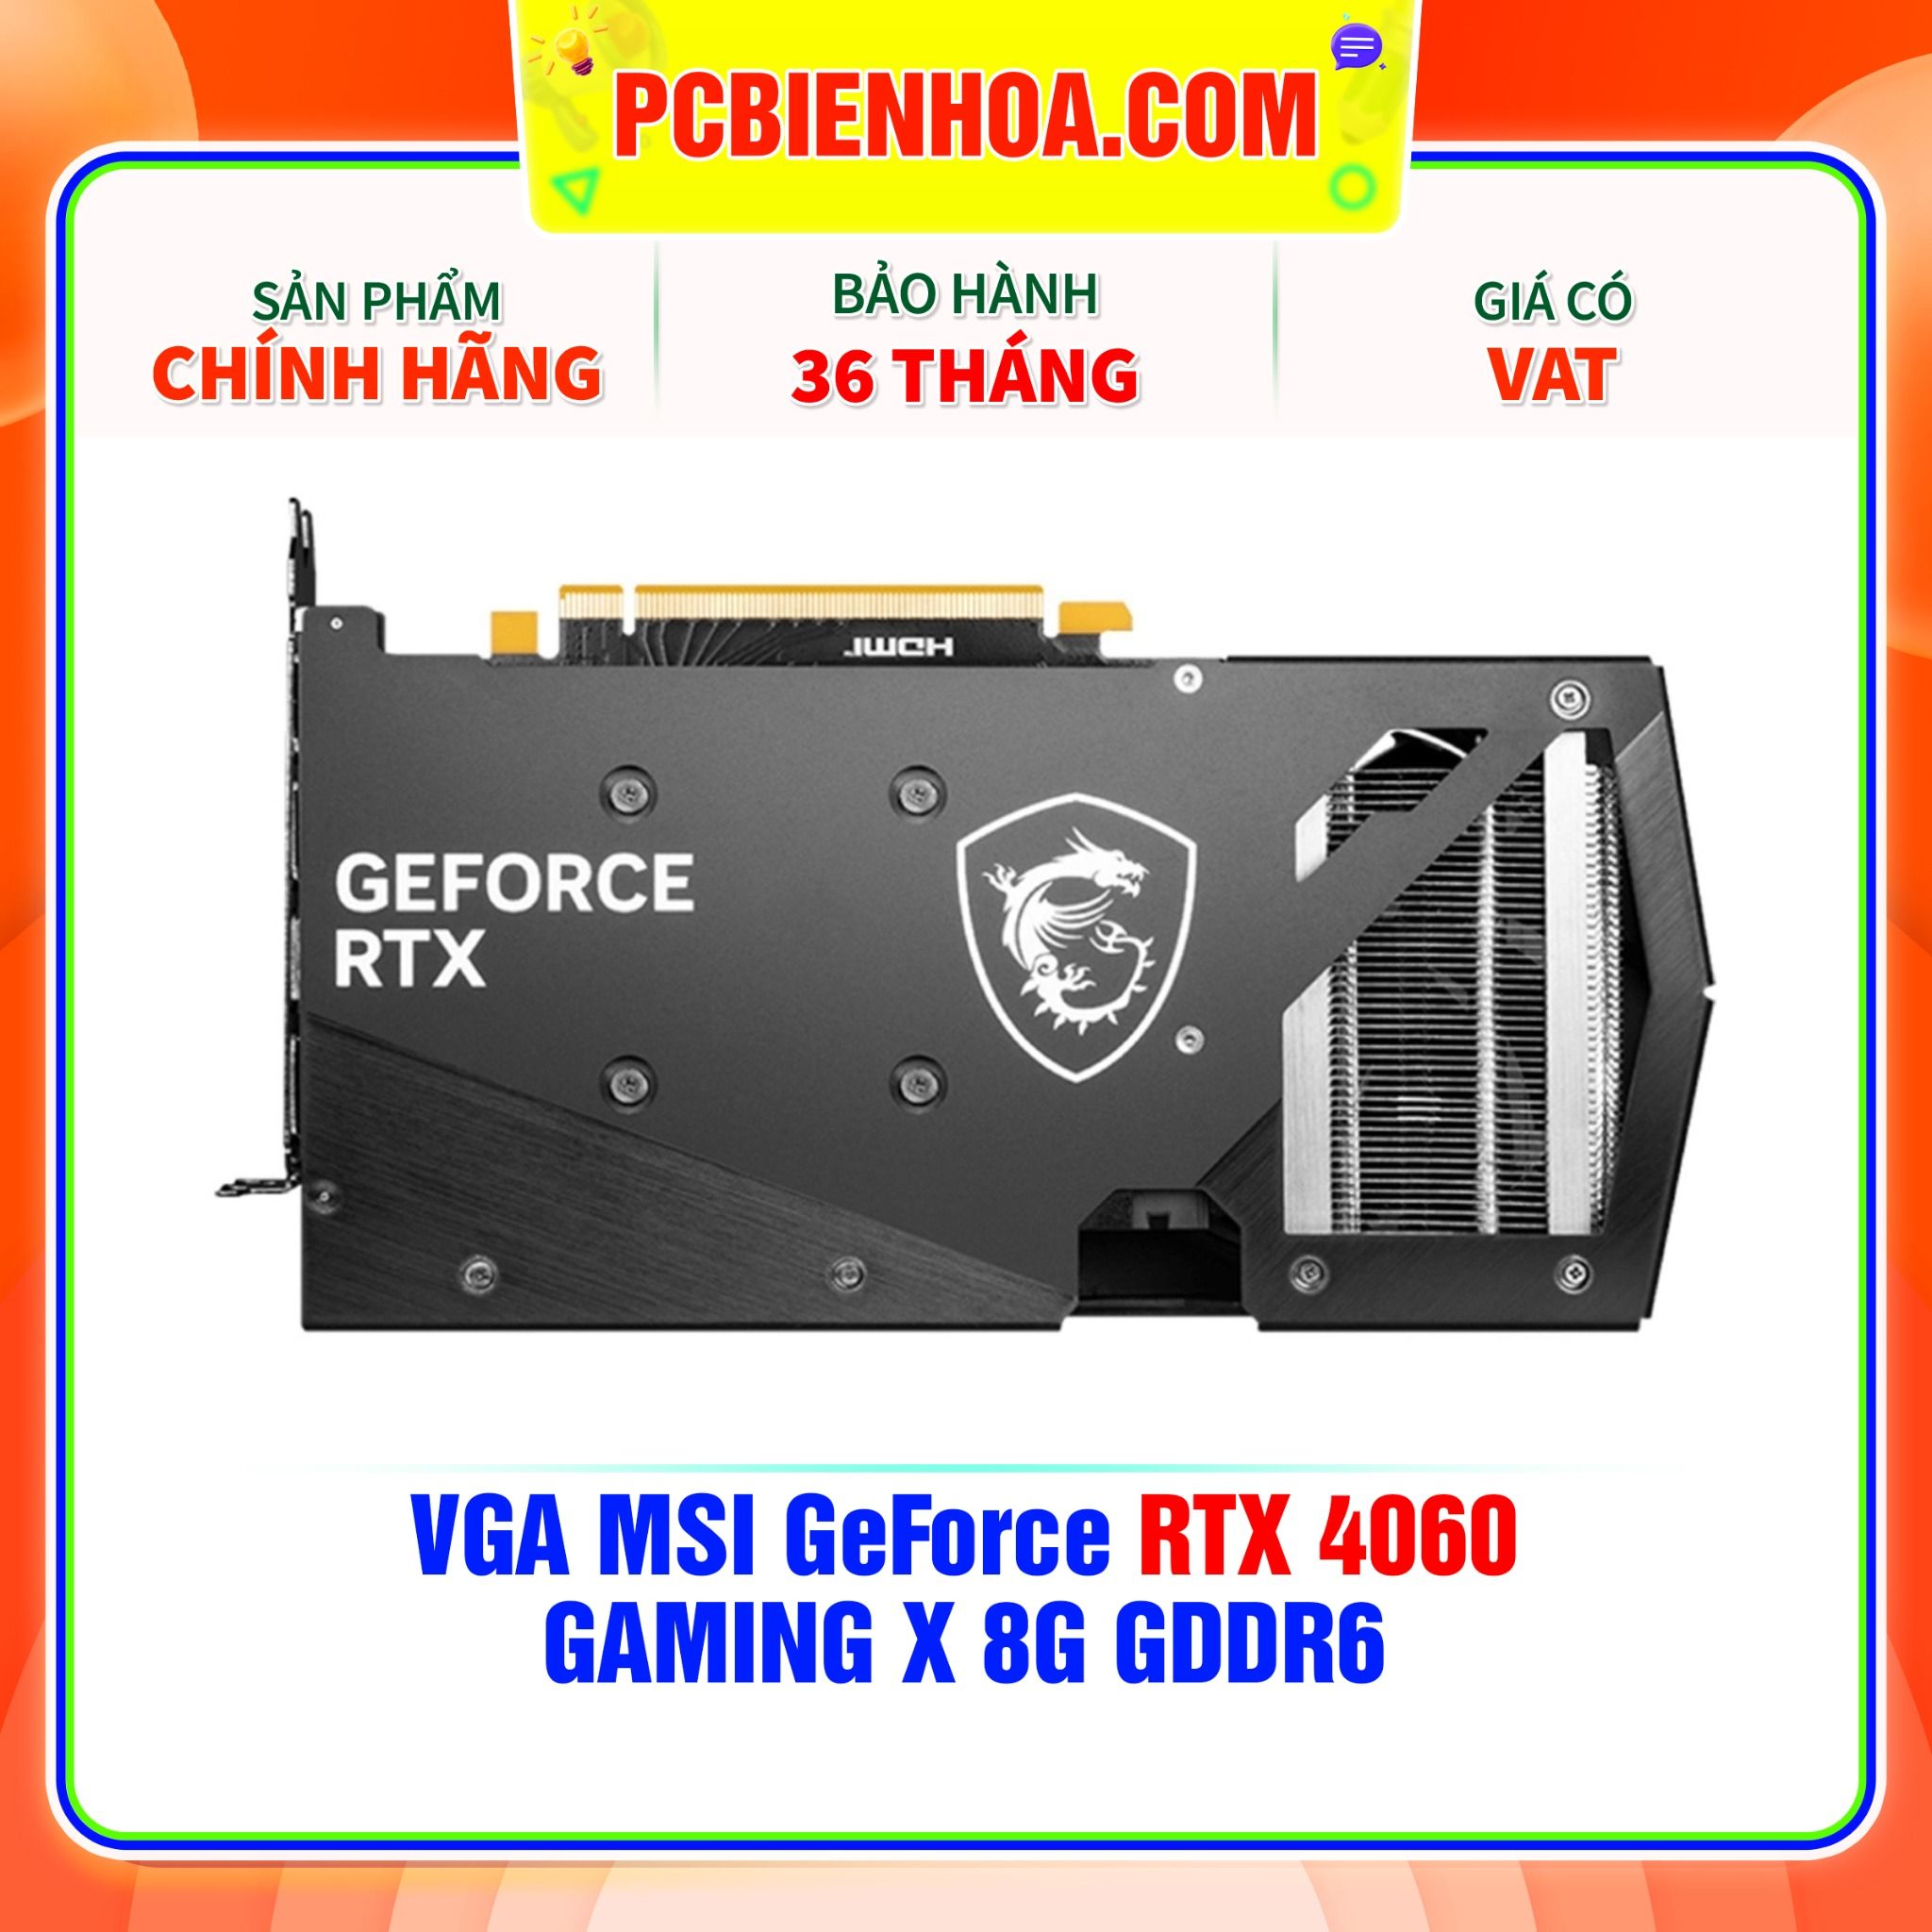  VGA MSI GeForce RTX 4060 GAMING X 8G GDDR6 